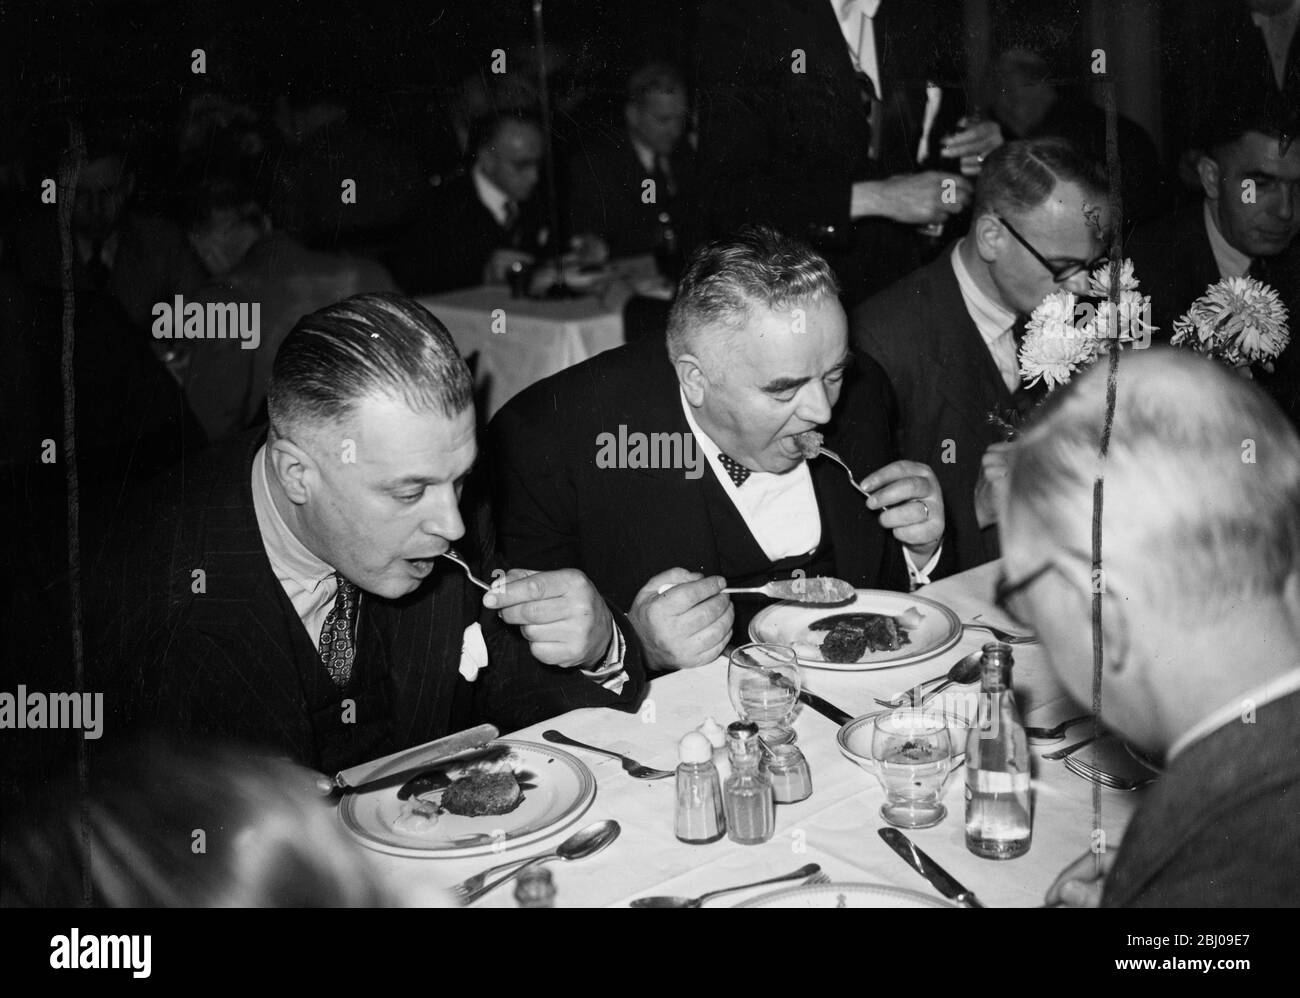 Walfleisch wurde zum ersten Mal bei einem offiziellen Mittagessen in London serviert, als das Institute of Refrigeration hld ihr Herbstessen in den Connaught Rooms servierte. Nach Genehmigung des Lebensmittelministeriums erschien der Walburger als zusätzlicher Gang auf der Speisekarte, der als Experiment beschrieben wurde. Rund 400 Gäste probierten das neue Gericht, das auf der gleichen Linie wie ein Hamburger zubereitet und serviert wurde. - 29. November 1946 Stockfoto